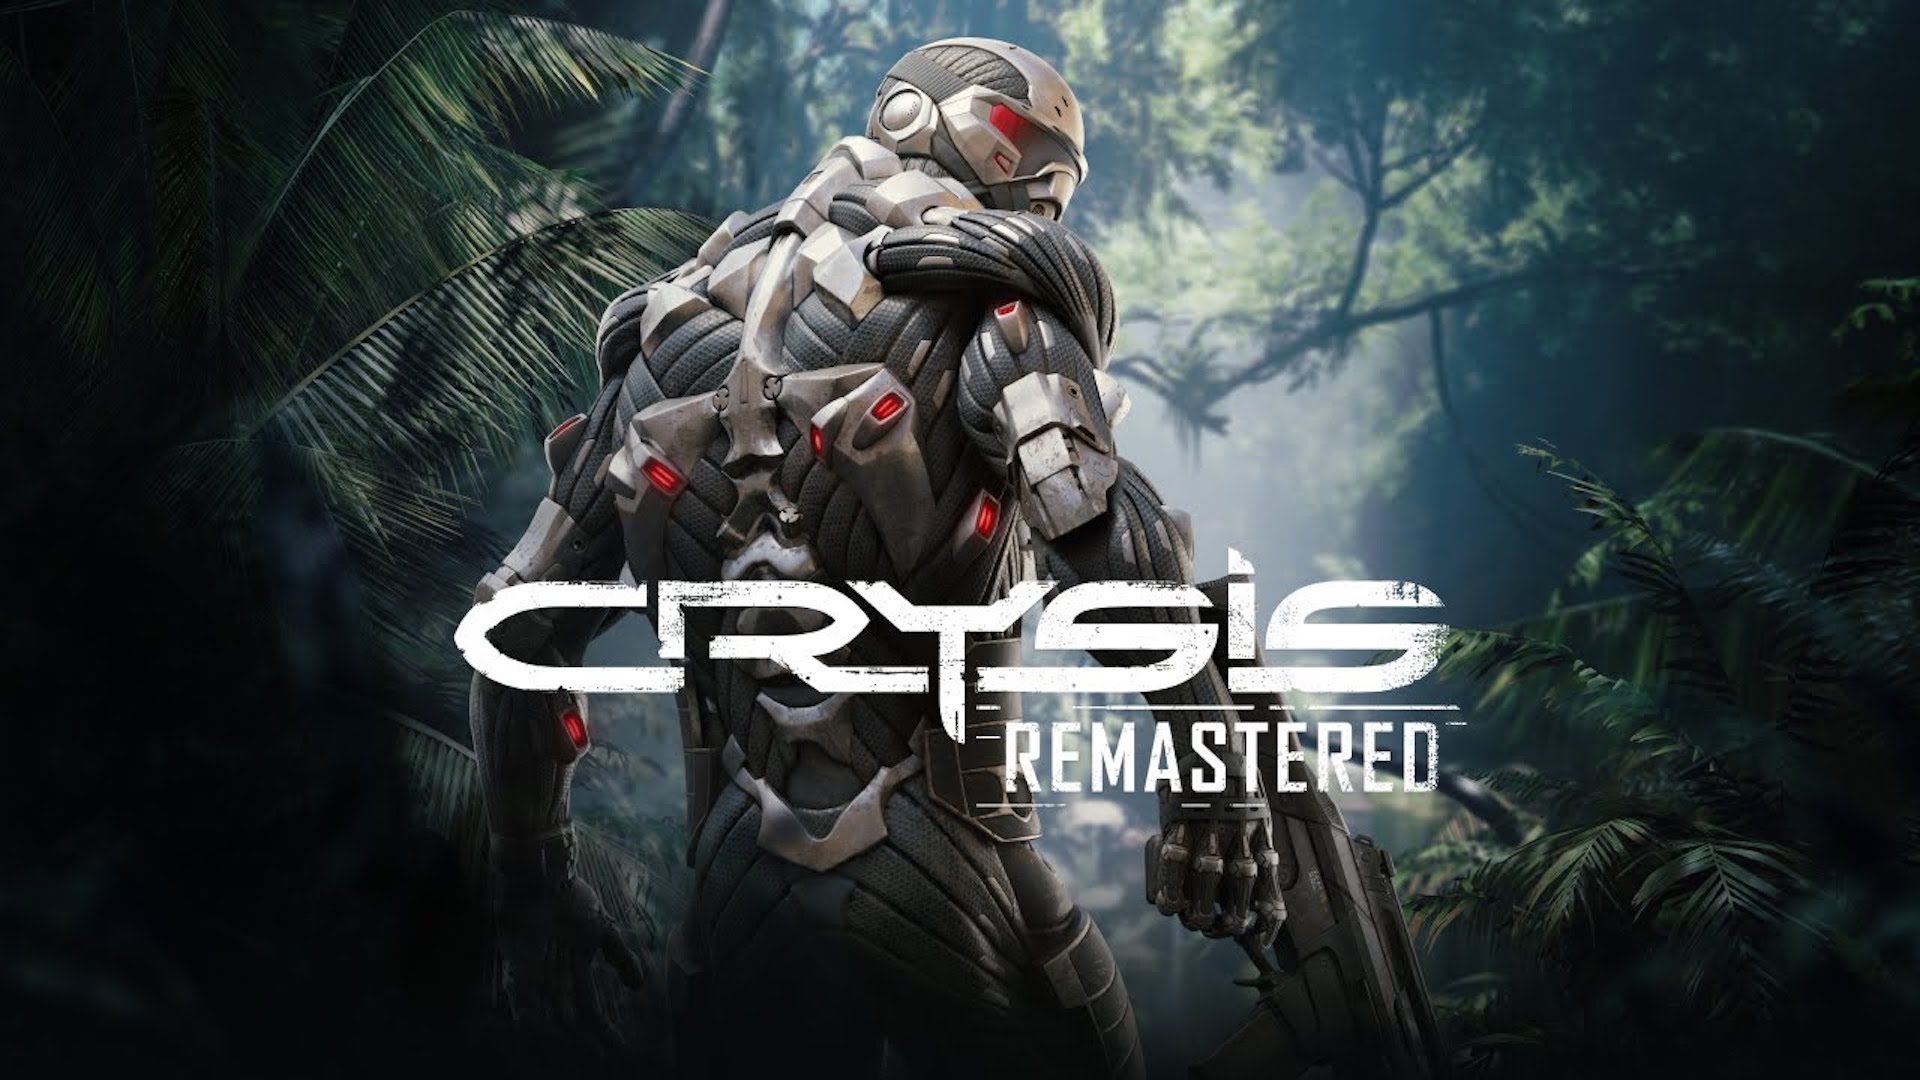 Karakteristikat e Remastered të Crysis "a mund të ekzekutojë Crysis?" Cilësimi i grafikës në kompjuter